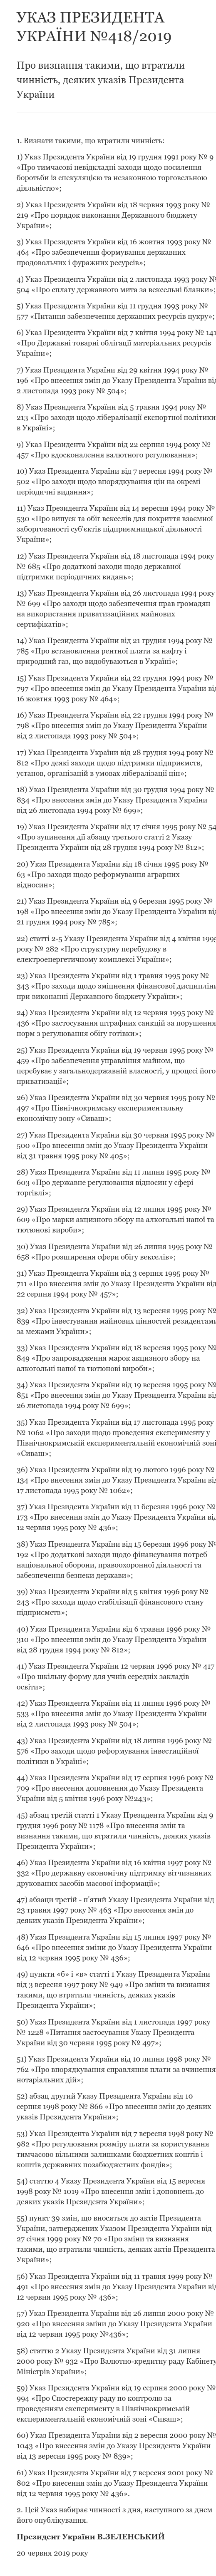 Зеленський скасував 61 економічний указ попередників 